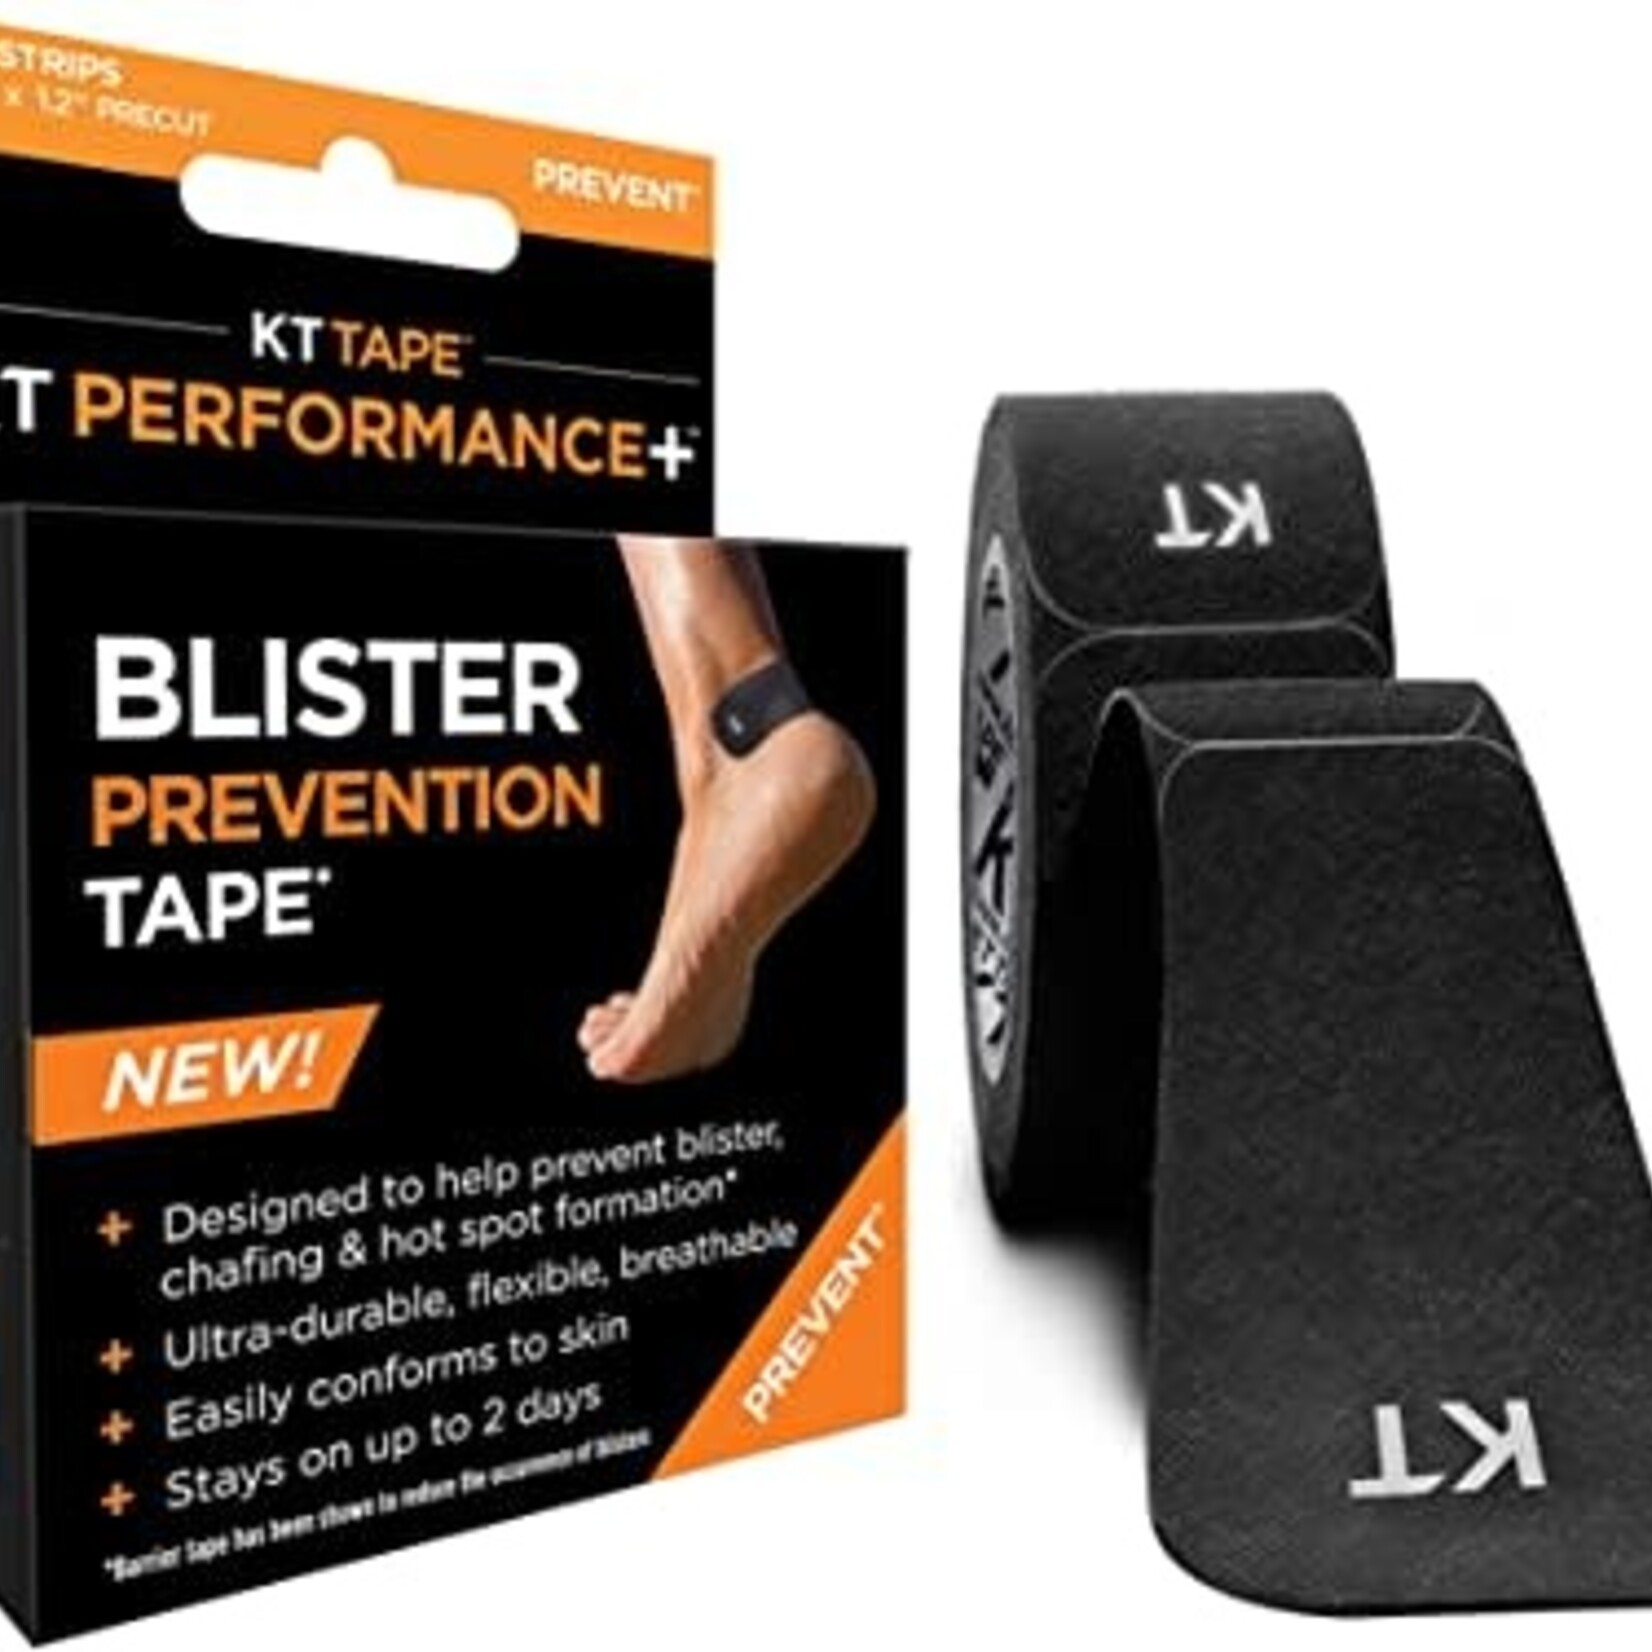 KT Tape KT Tape Blister Prevention Tape